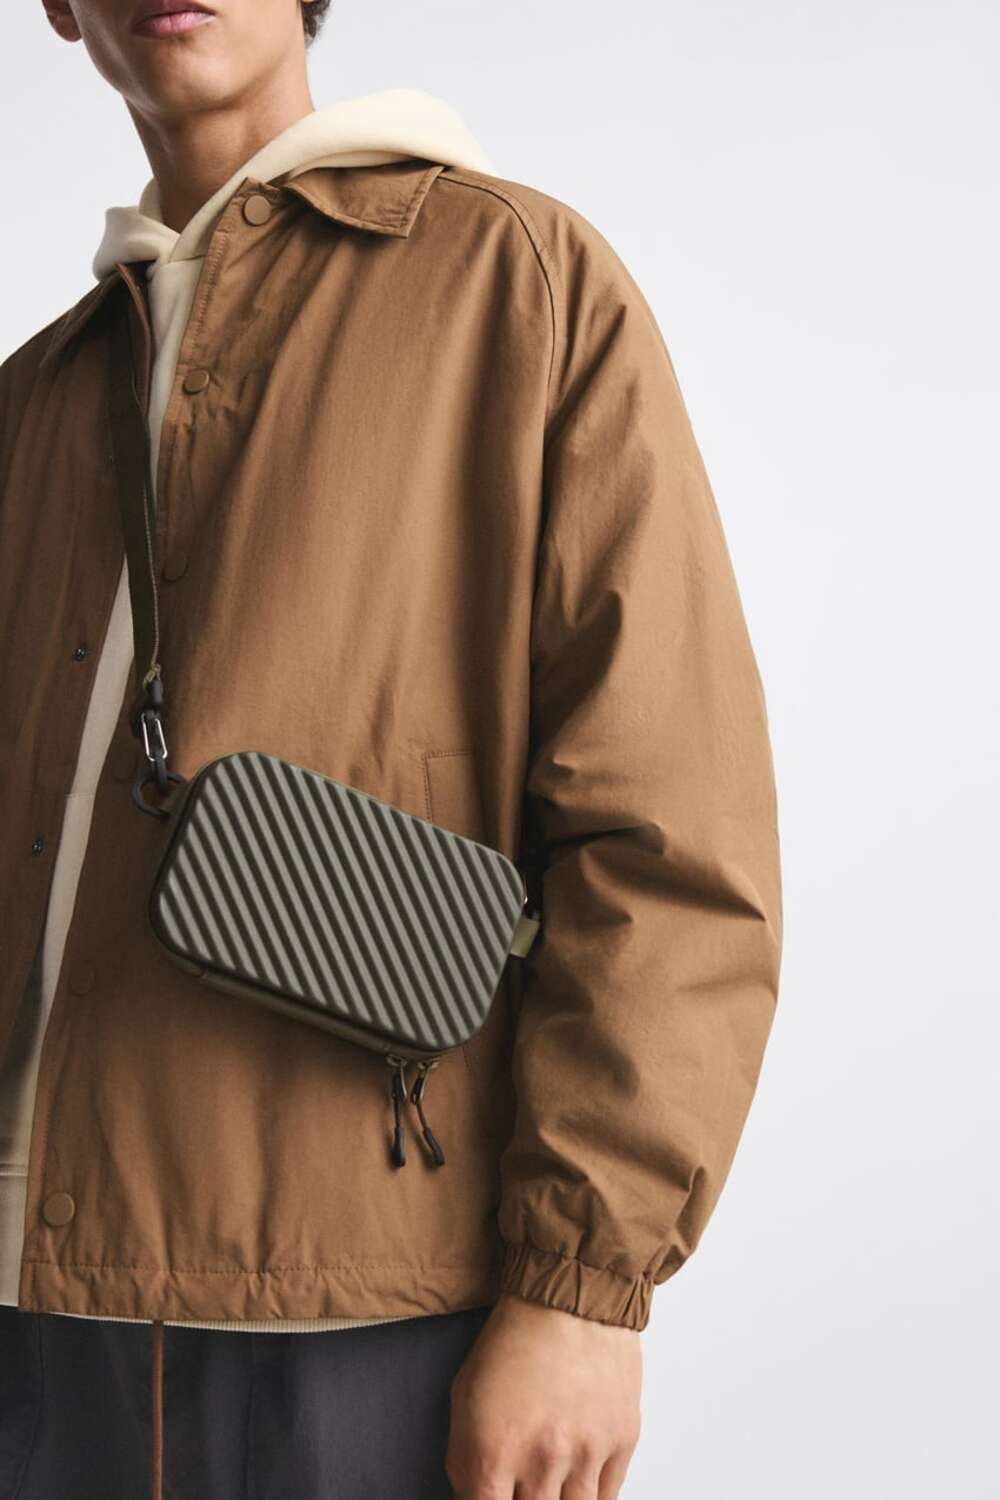 Zara torbica 1 Muški aksesoari: Top 7 artikala koje biraju naši stilisti